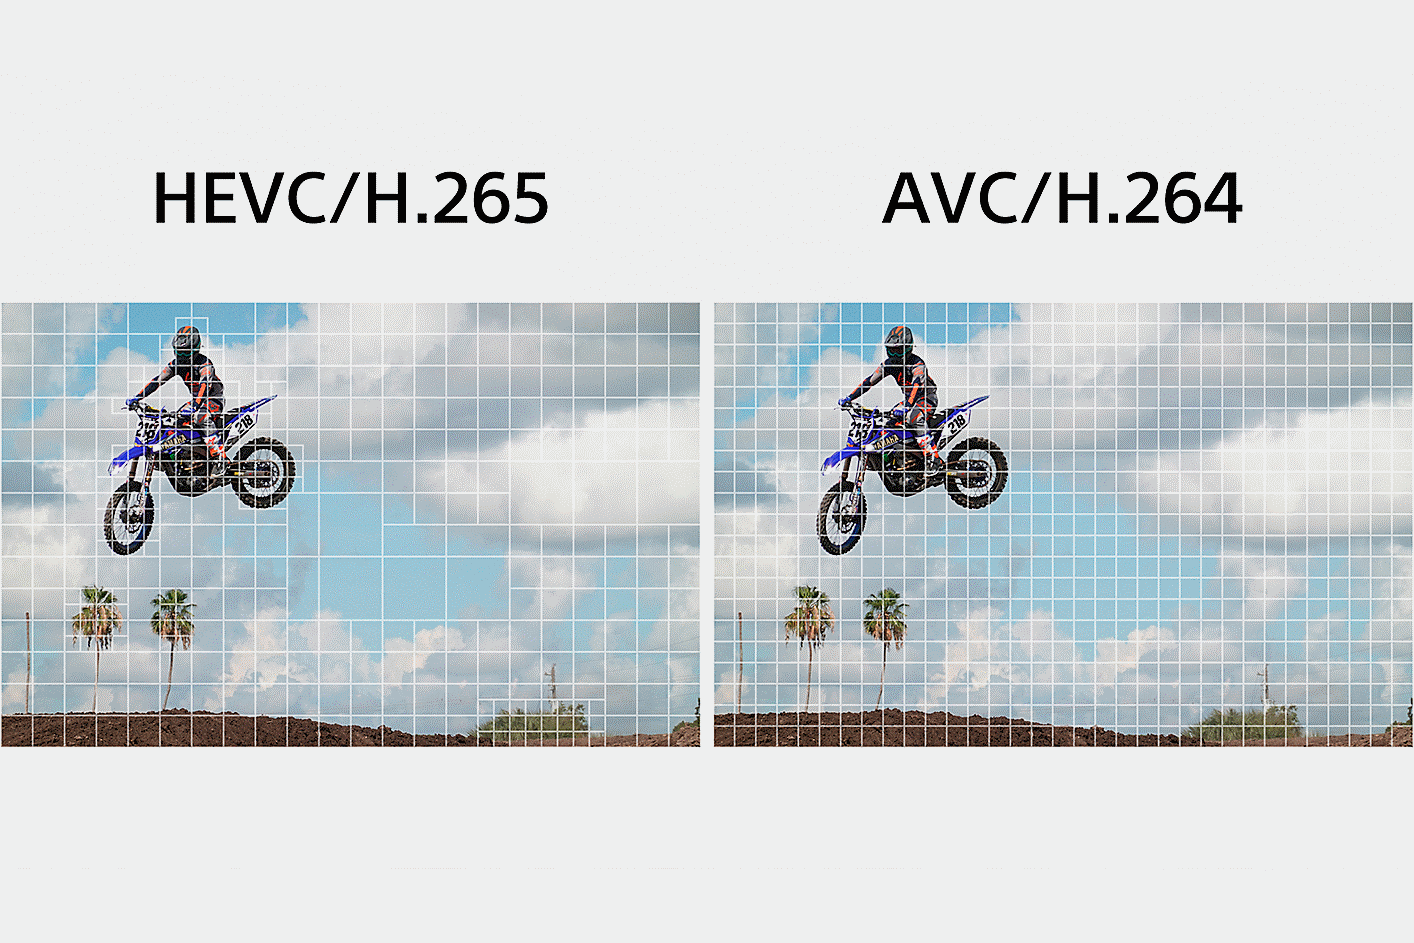 Αριστερά: Το HEVC/H.265 που διαιρεί το σύνθετο τμήμα του κλιπ σε μικρότερα τμήματα για την επεξεργασία δεδομένων. Δεξιά: Το AVC/H.264, που διαιρεί εξίσου την εικόνα βίντεο για την επεξεργασία δεδομένων